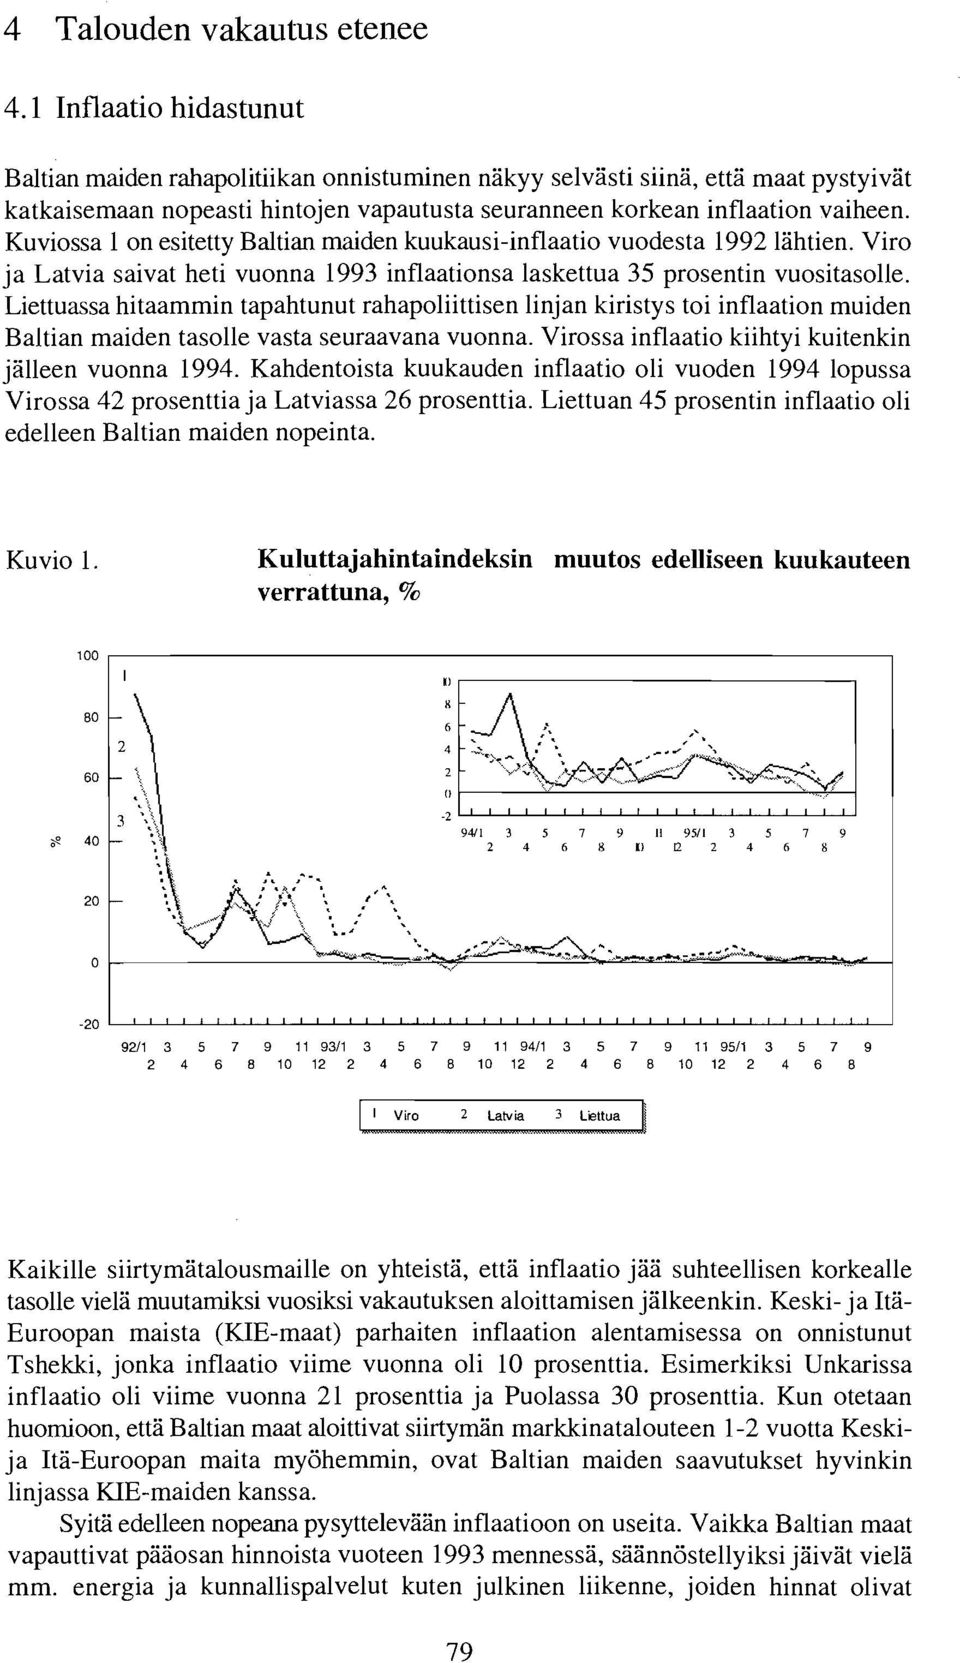 Kuviossa 1 on esitetty Baltian maiden kuukausi-inflaatio vuodesta 1992 lahtien. Viro ja Latvia saivat heti vuonna 1993 inflaationsa laskettua 35 prosentin vuositasolle.